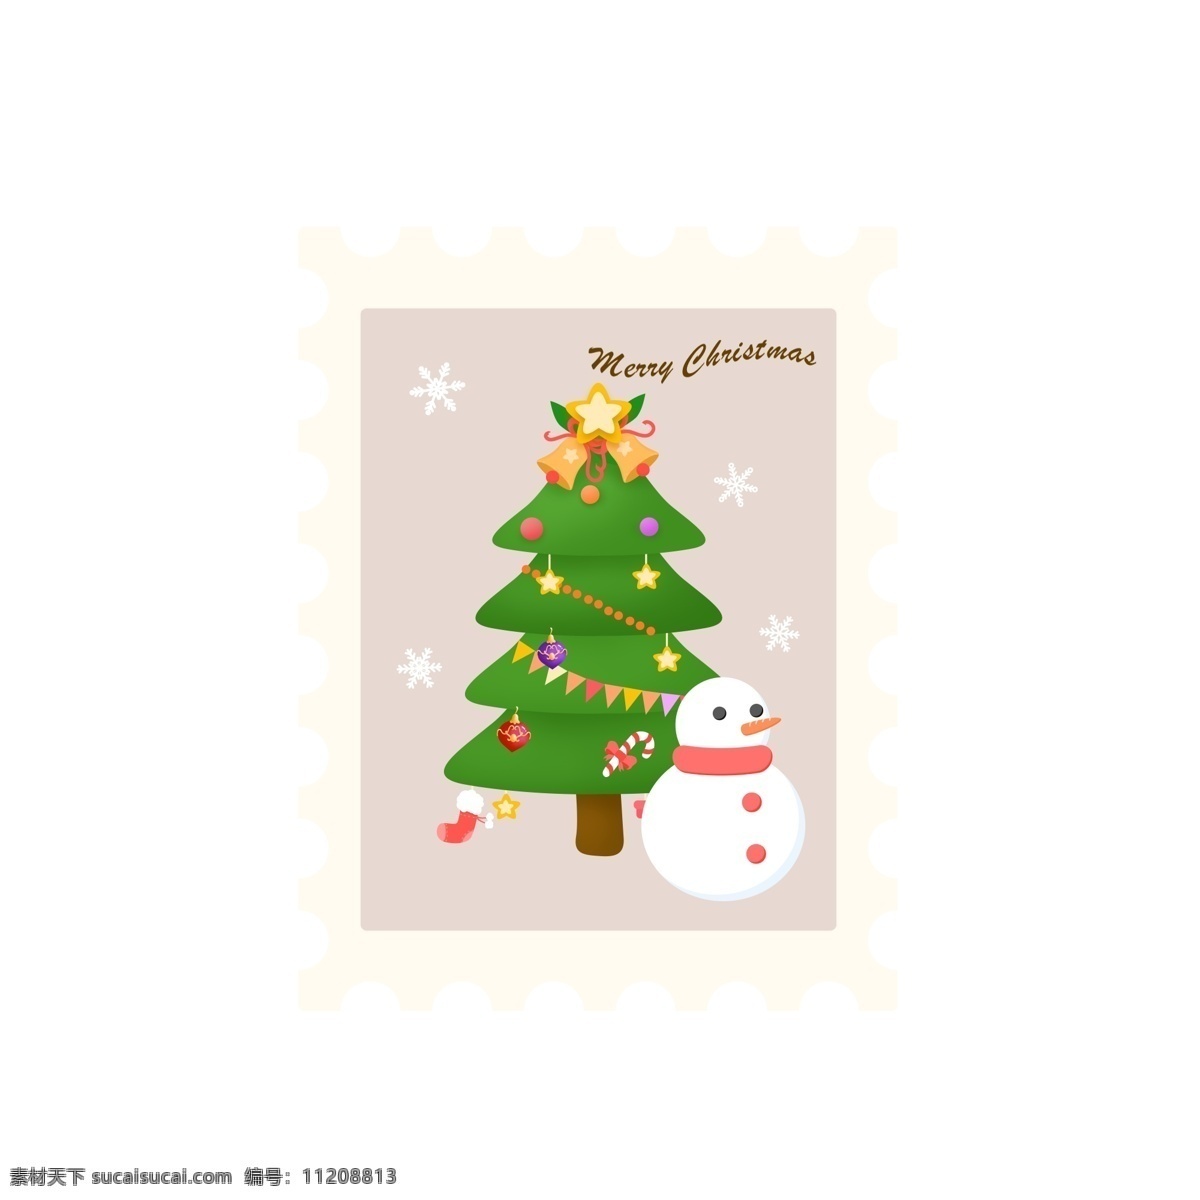 可爱 卡通 圣诞节 邮票 贴纸 圣诞树 雪人 元素 节日 雪花 星星 小贴纸 铃铛 松球 圣诞袜 彩旗 糖果 挂饰 圣诞快乐